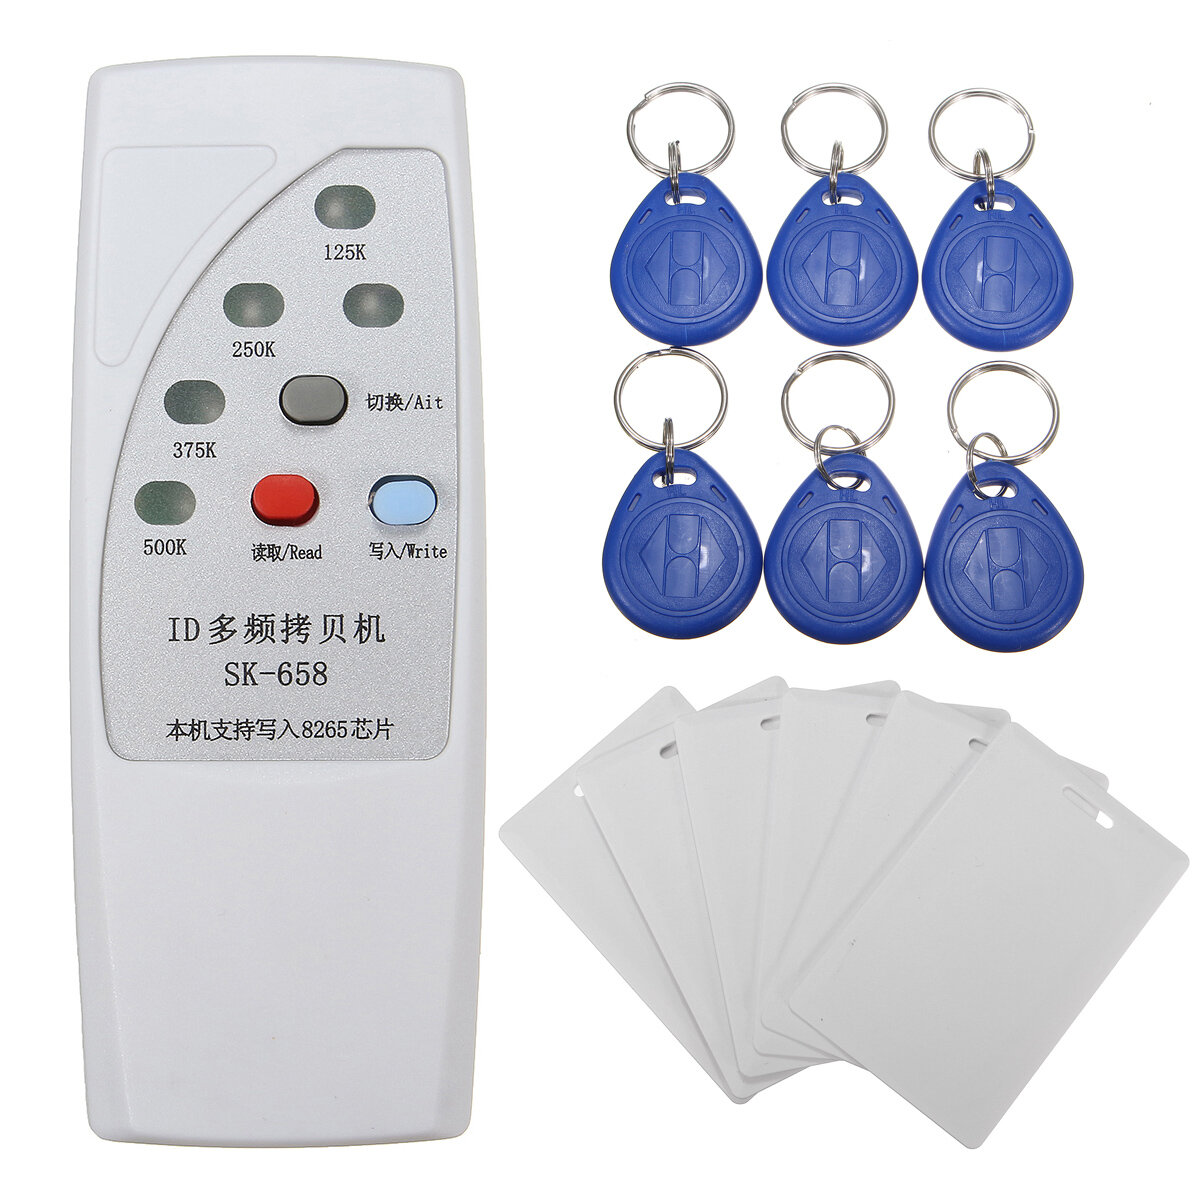 DANIU SK-658 13Unids 125KHz RFID Lector de Tarjetas de ID Copiadora Duplicador con Kit de 6 Tarjetas/Etiquetas